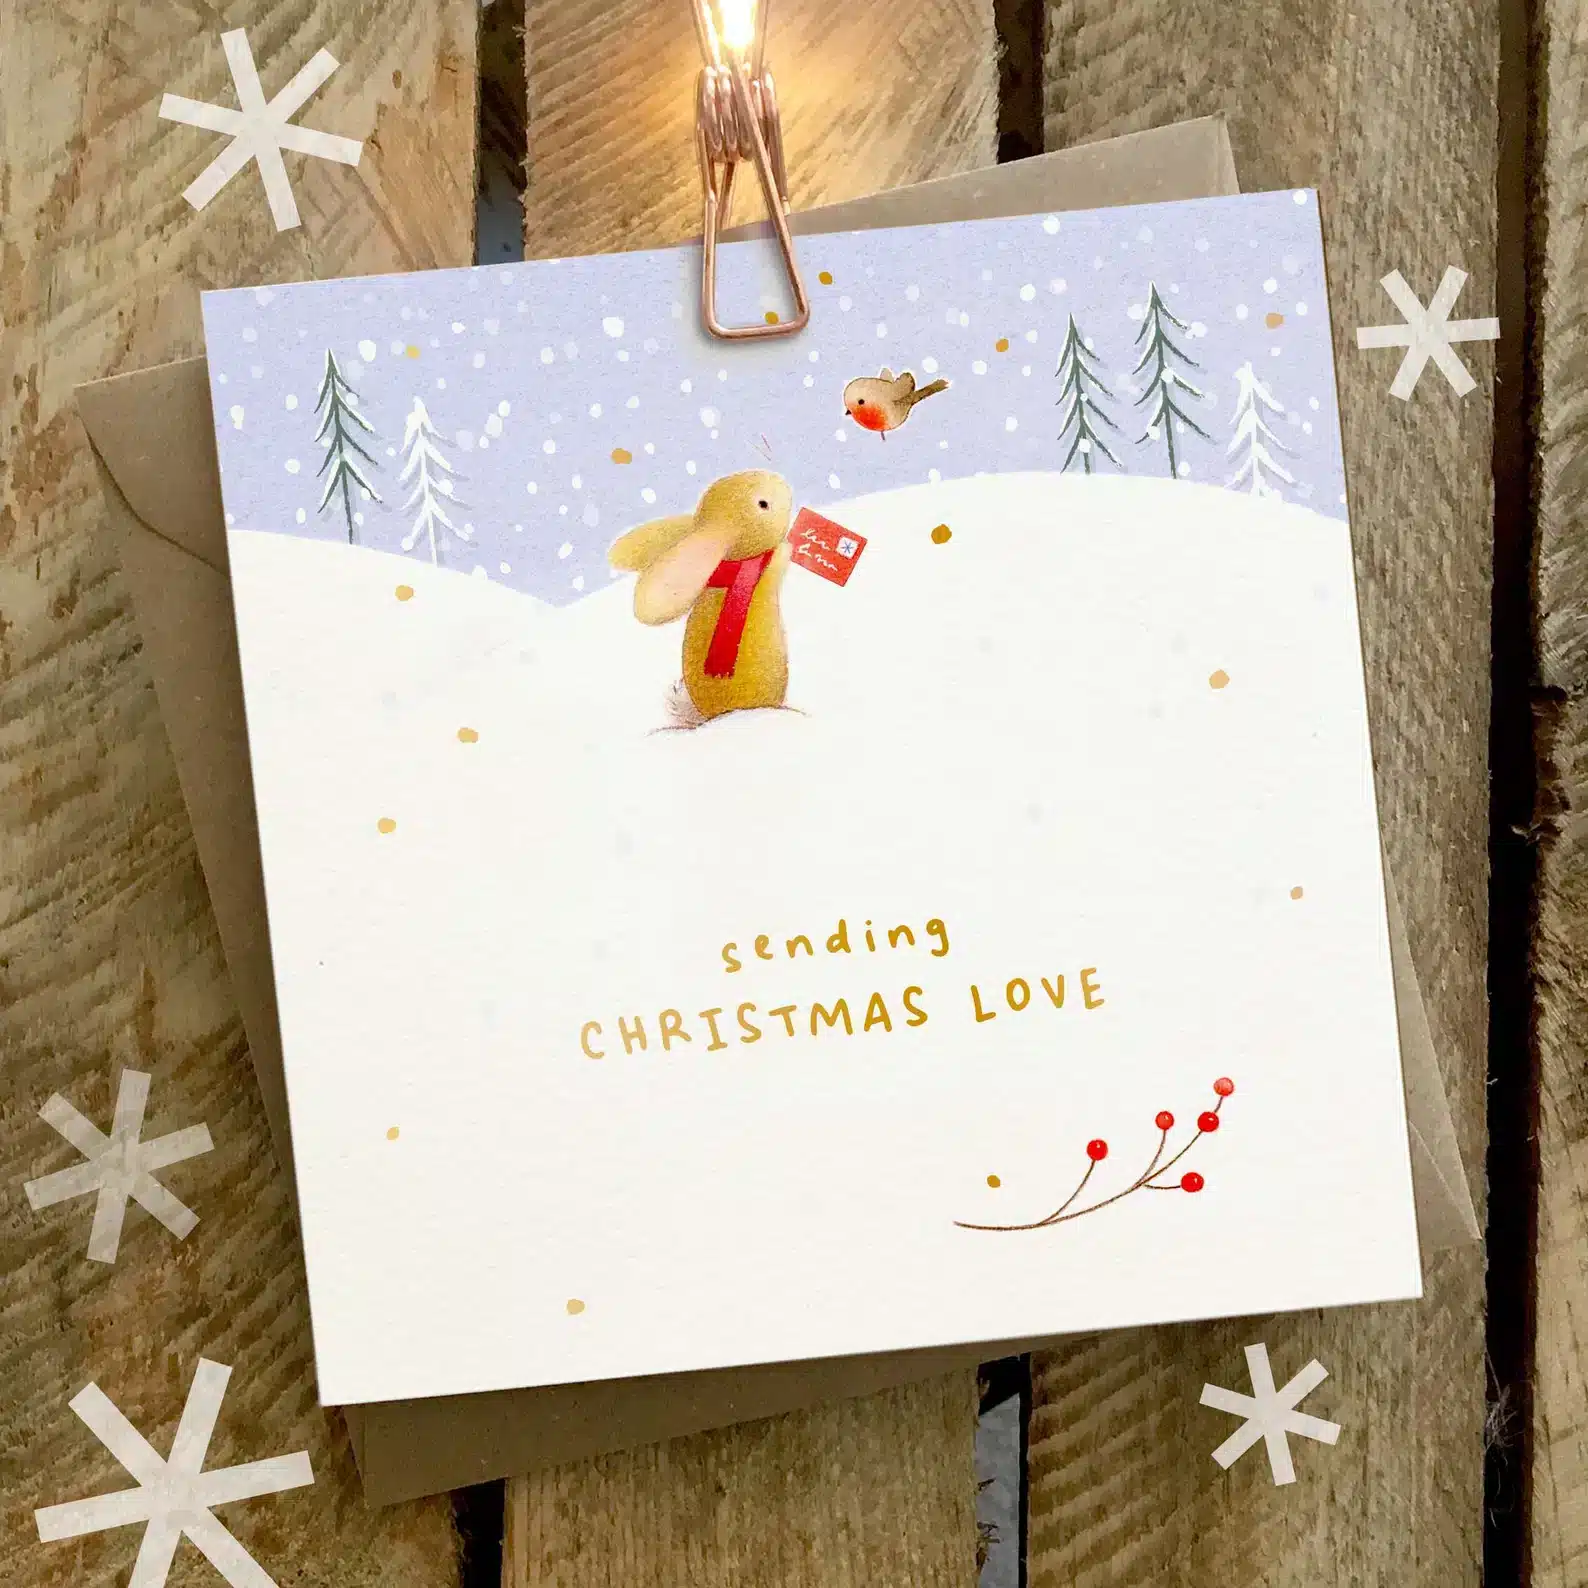 Sending Christmas Love Christmas Card